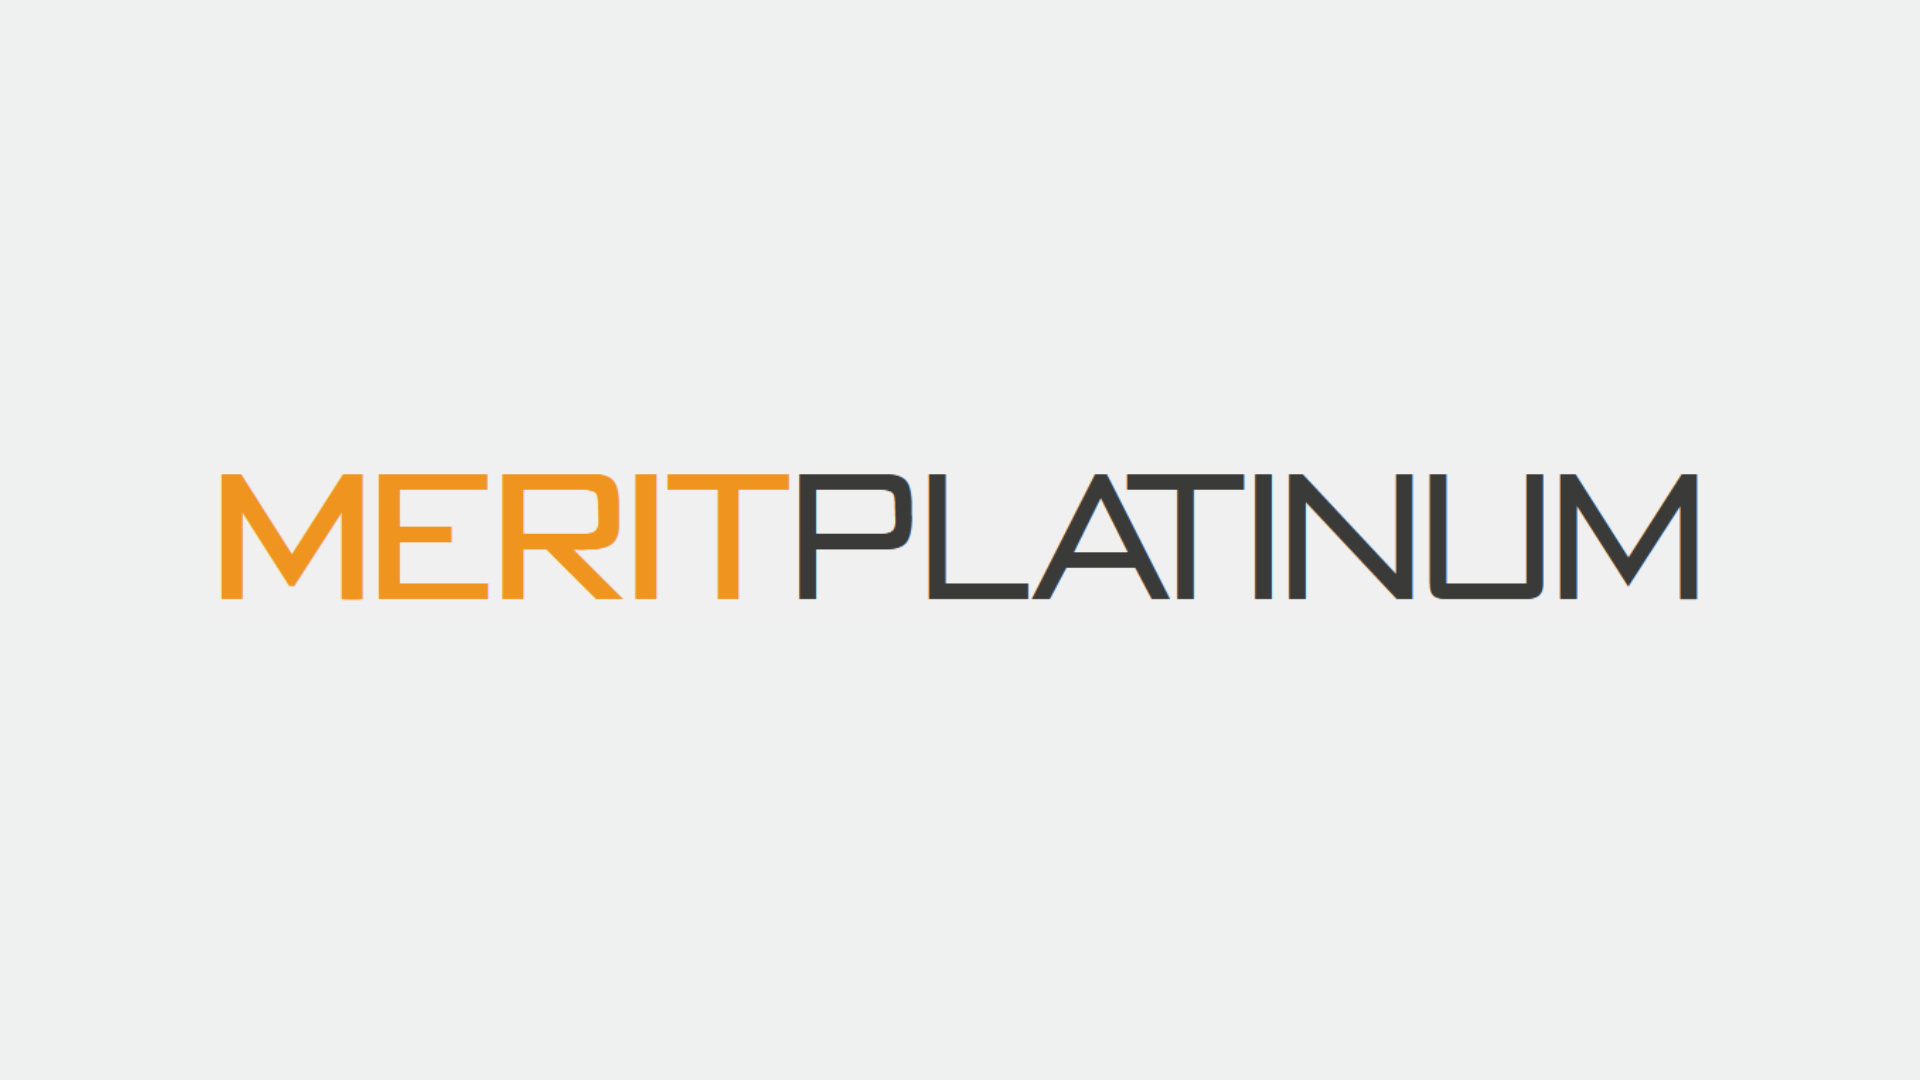 Merit Platinum logo